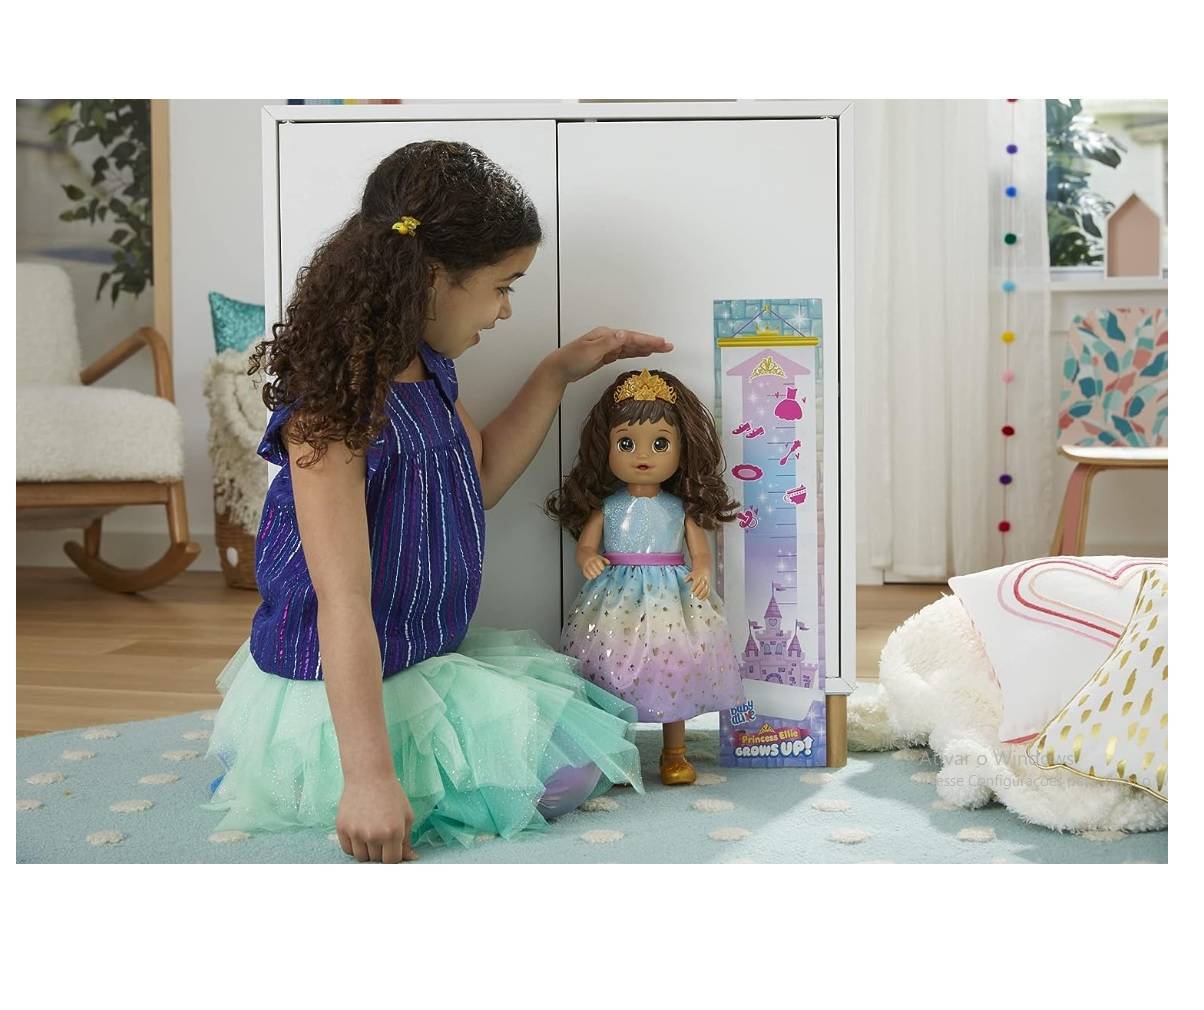 Boneca Baby Alive Princess Ellie Grows Up Morena - Hasbro